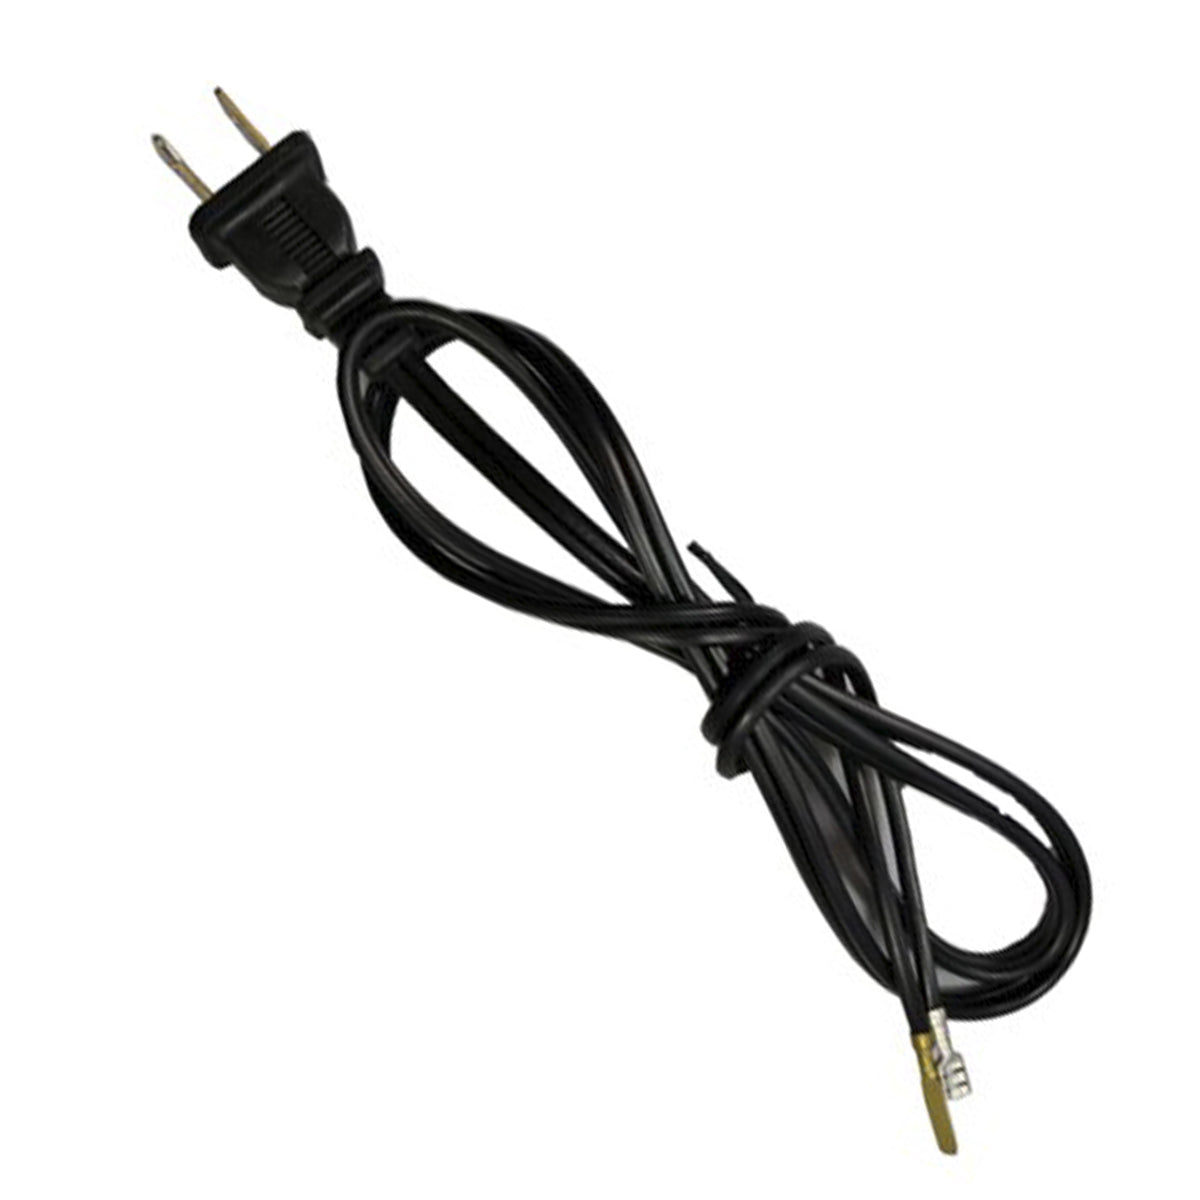 Cable para Licuadoras Oster Original negro